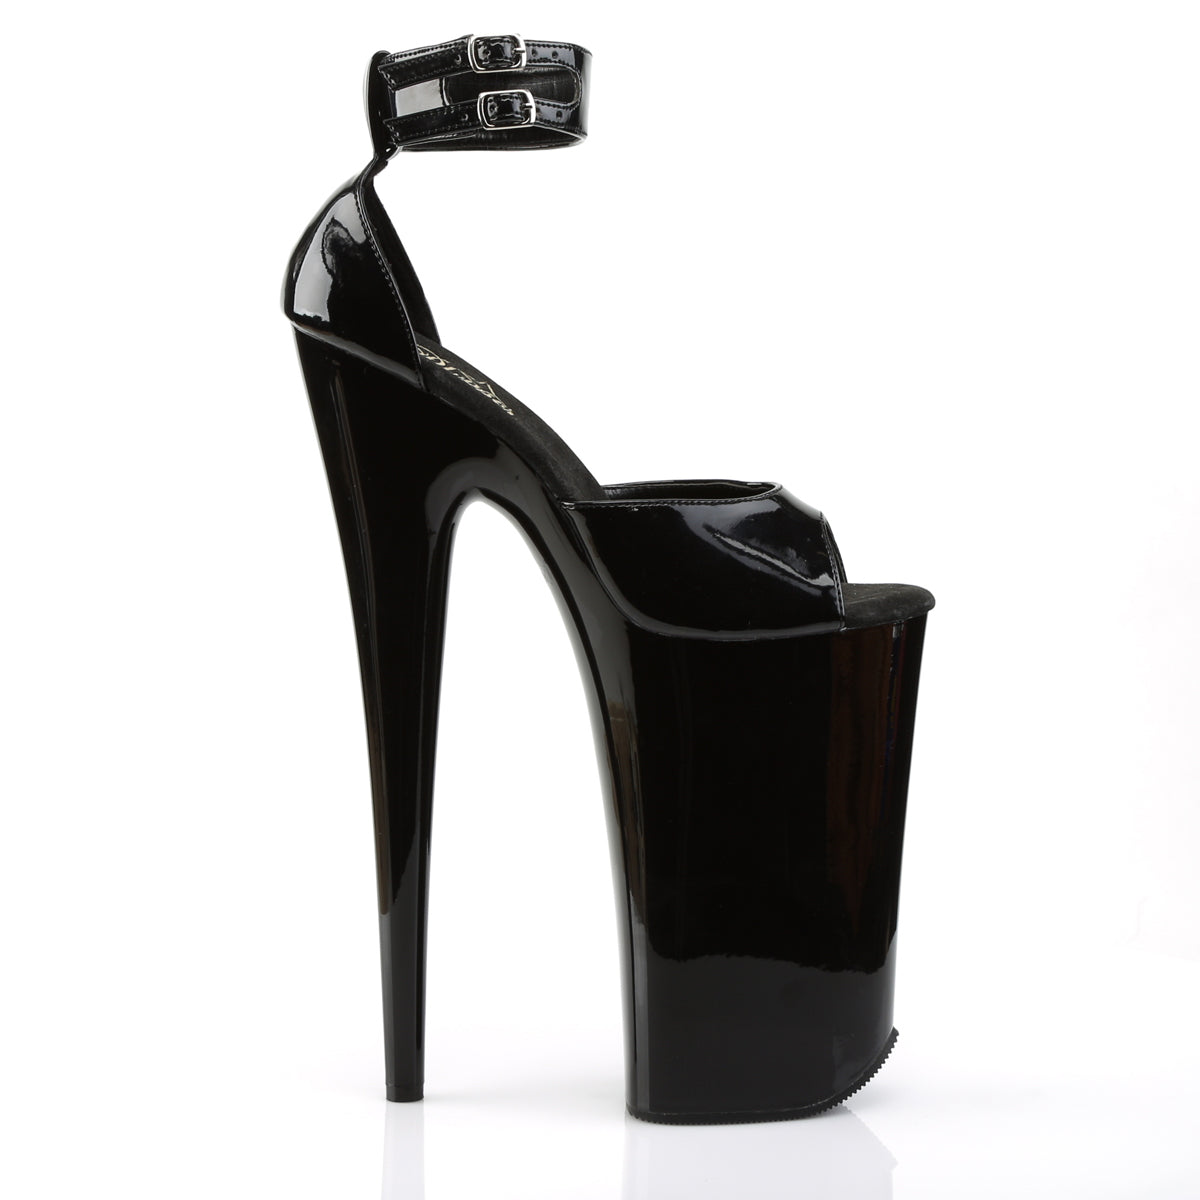 BEYOND-089 Pleaser Black Platform Shoes [Extreme High Heels]